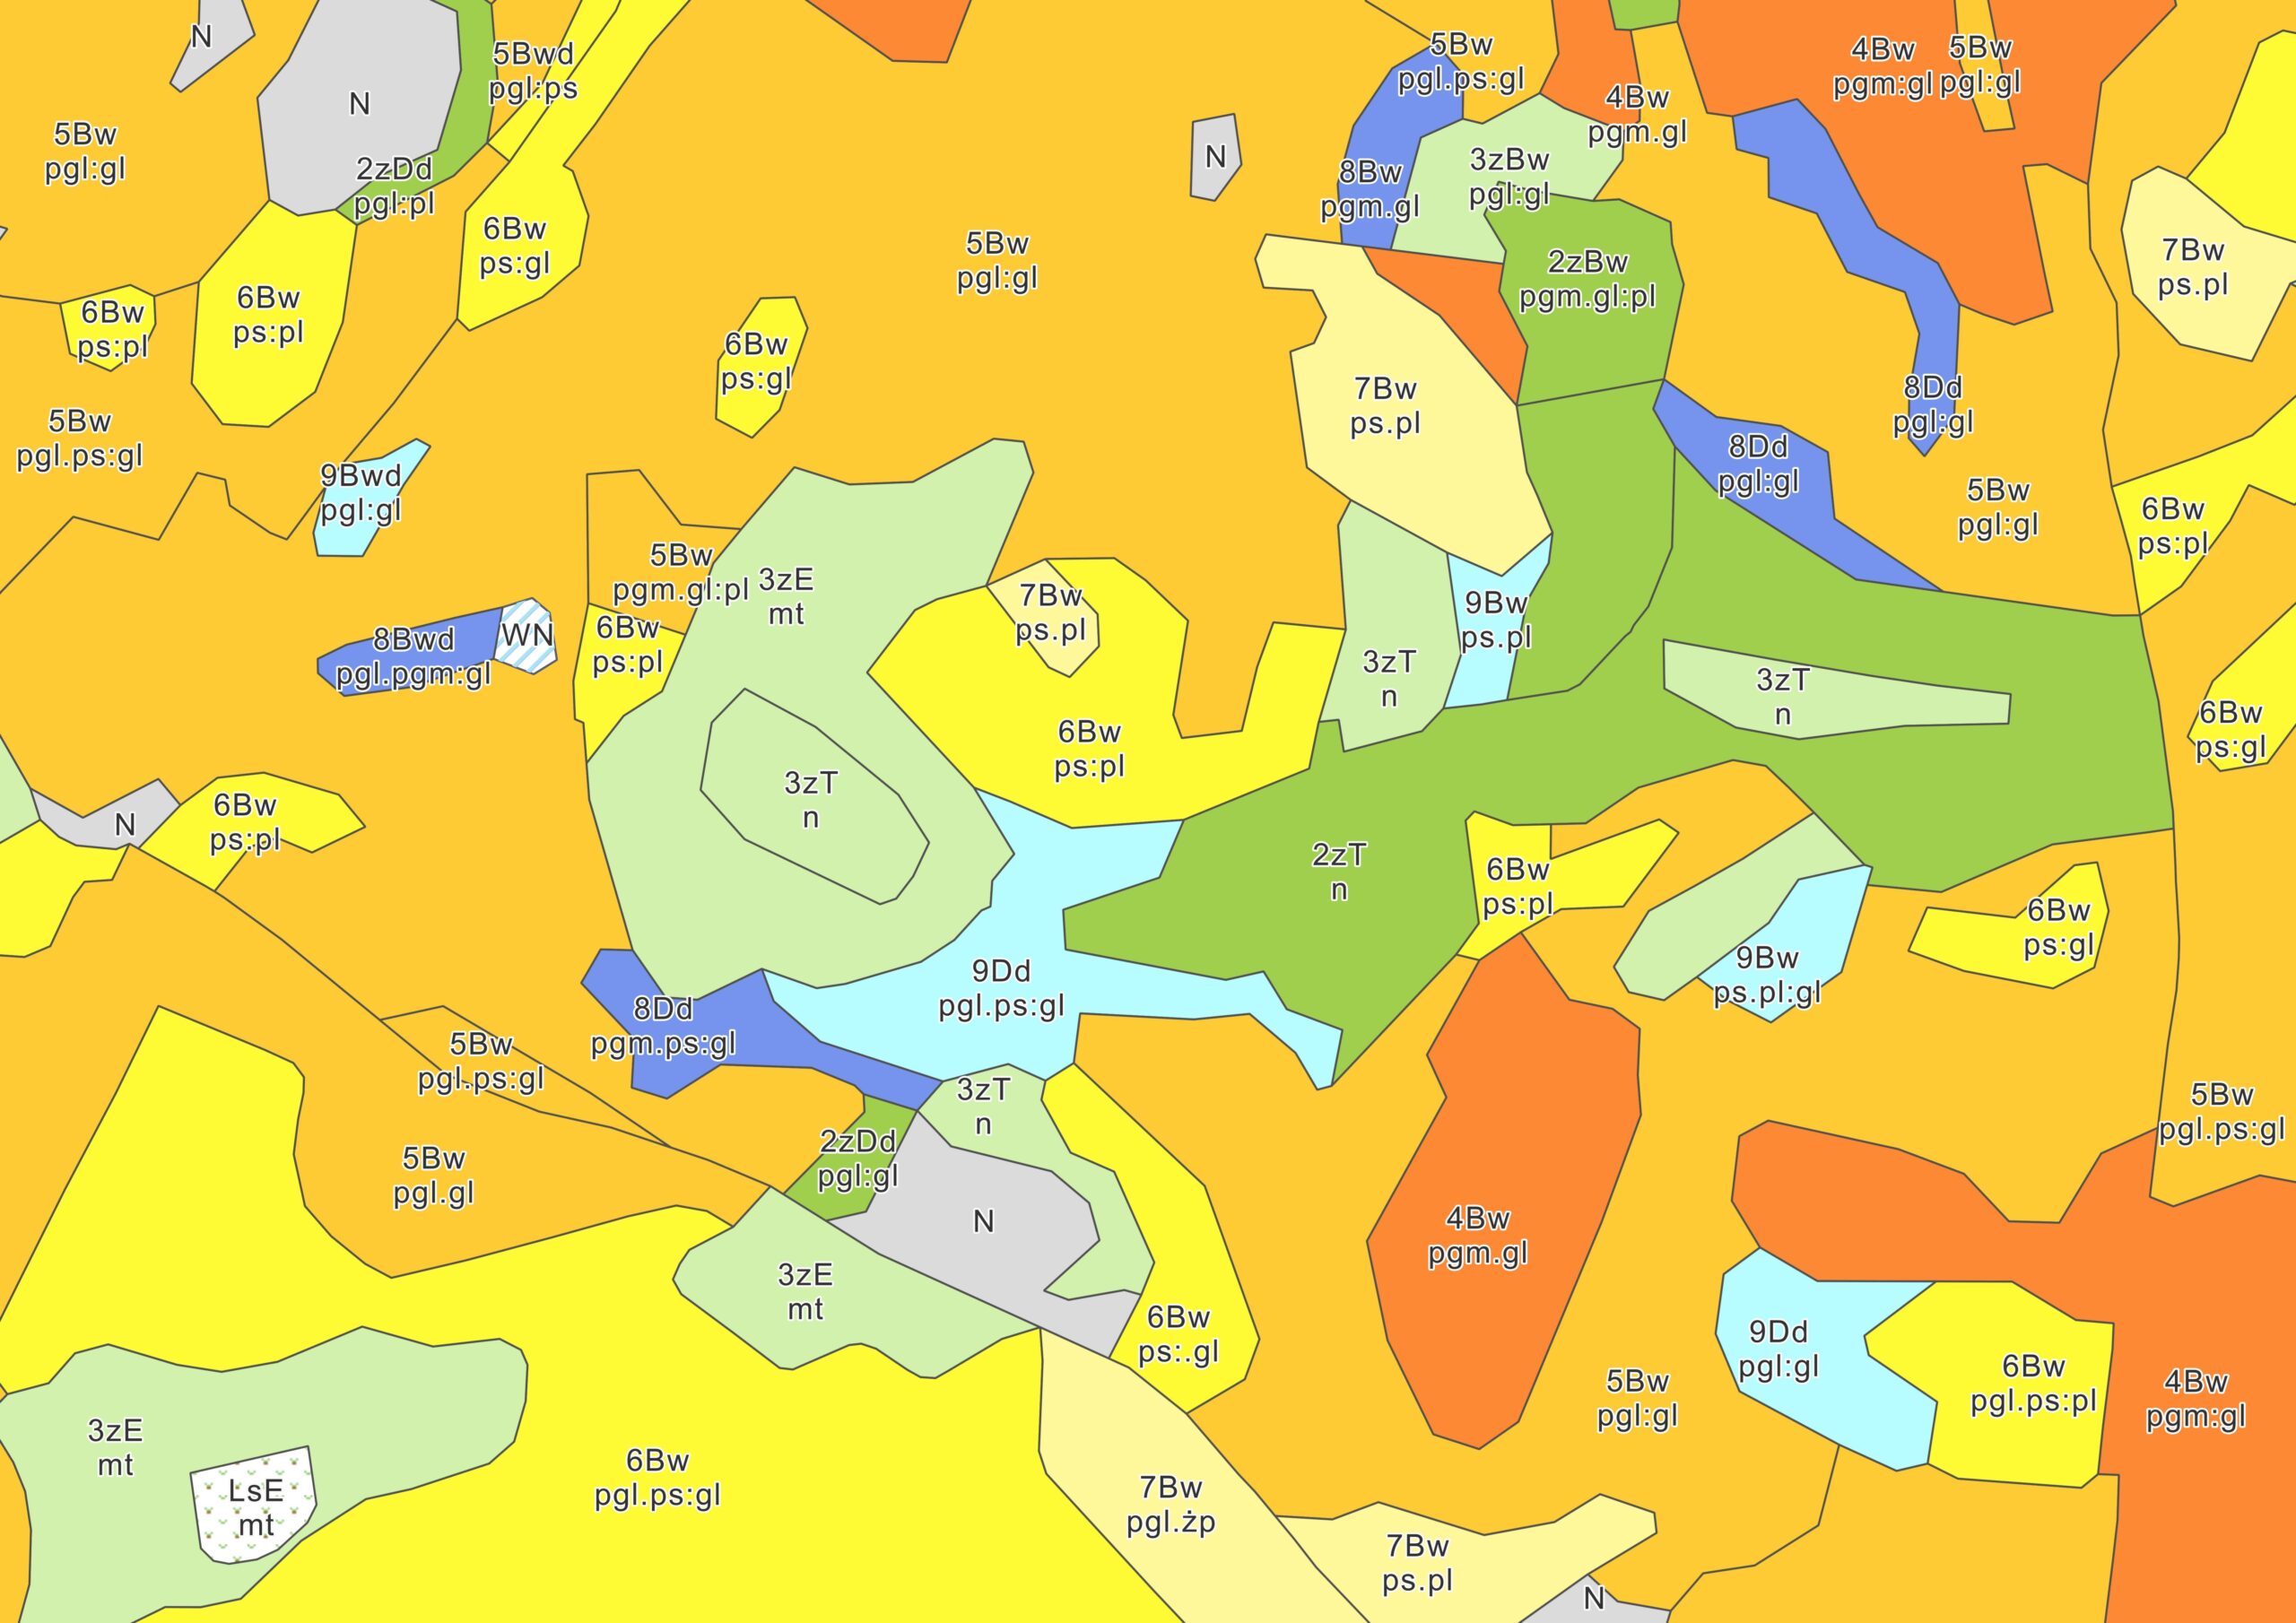 rys1 - wizualizacja fragmentu mapy glebowo-rolniczej dla woj. pomorskiego.